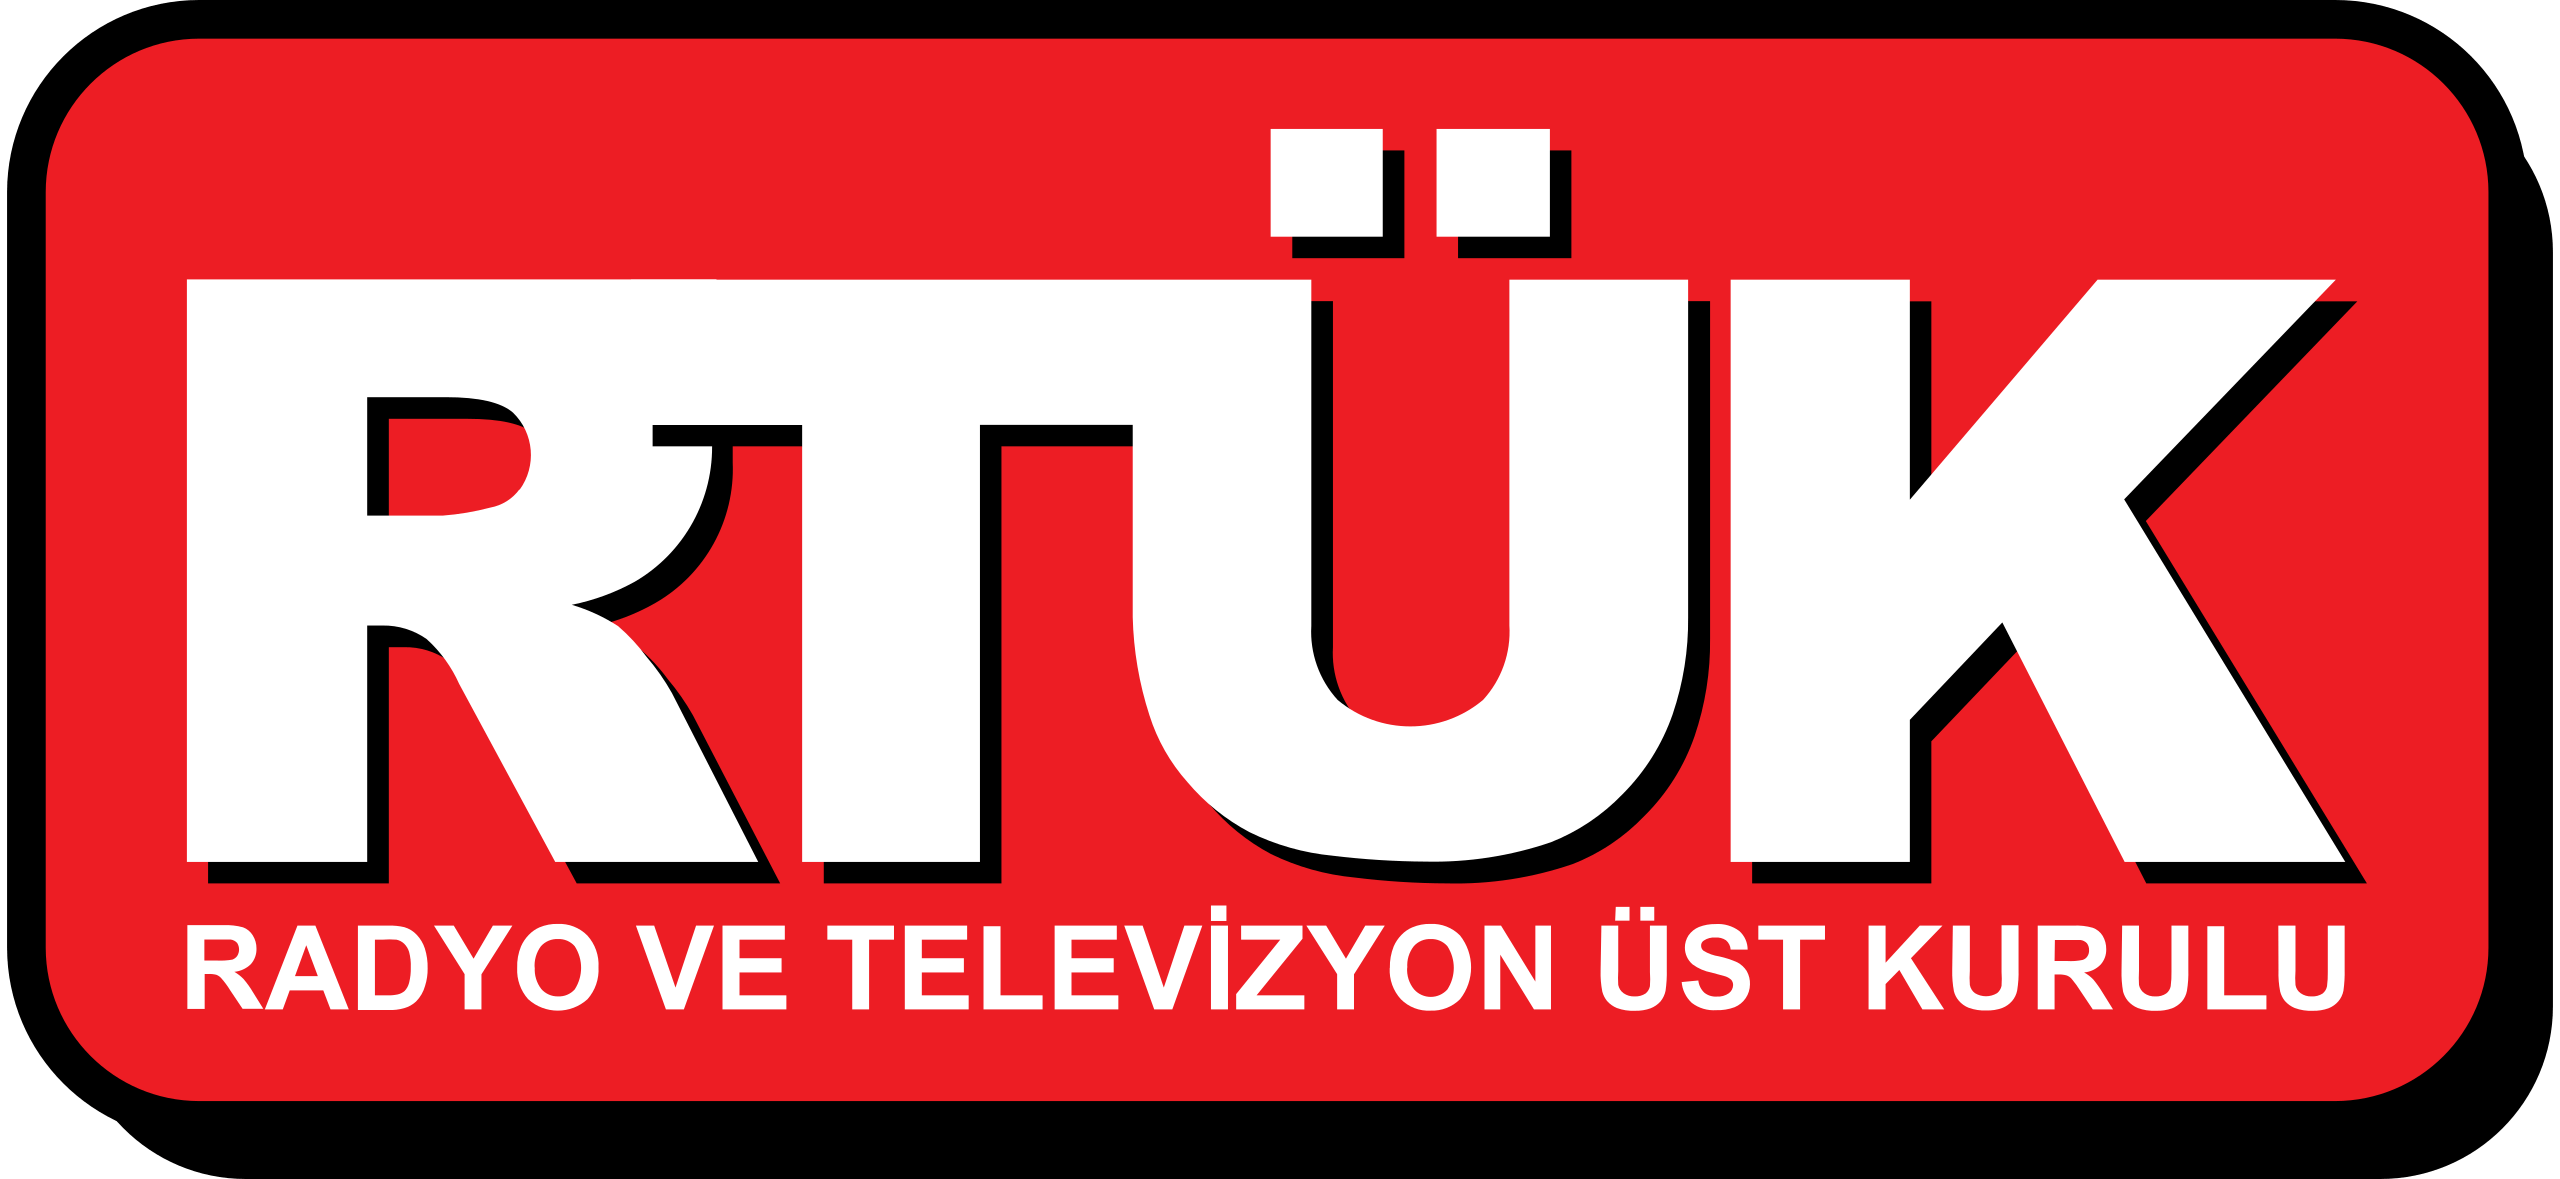 RTÜK’ten Halk TV ve Flash TV’ye yayın durdurma cezası